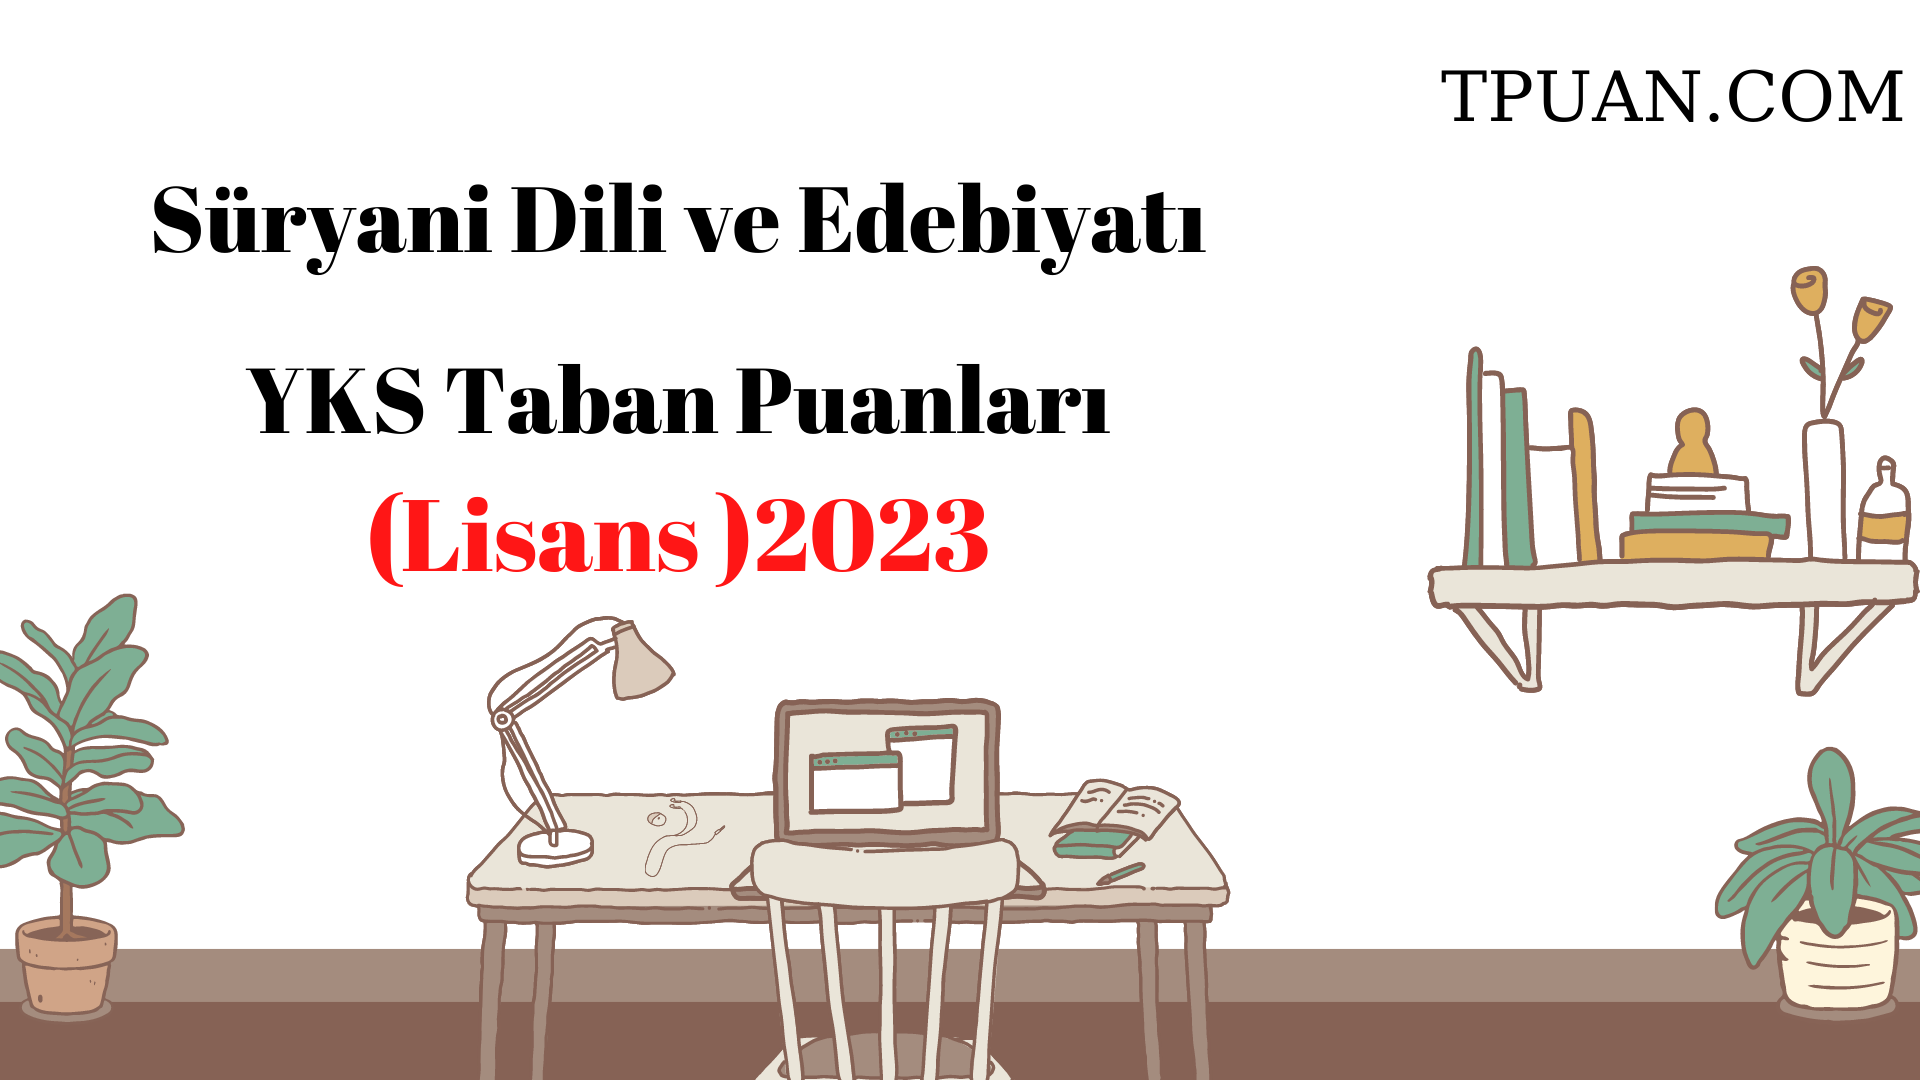  Süryani Dili ve Edebiyatı Bölümü YKS Taban Puanları (4 Yıllık) 2023